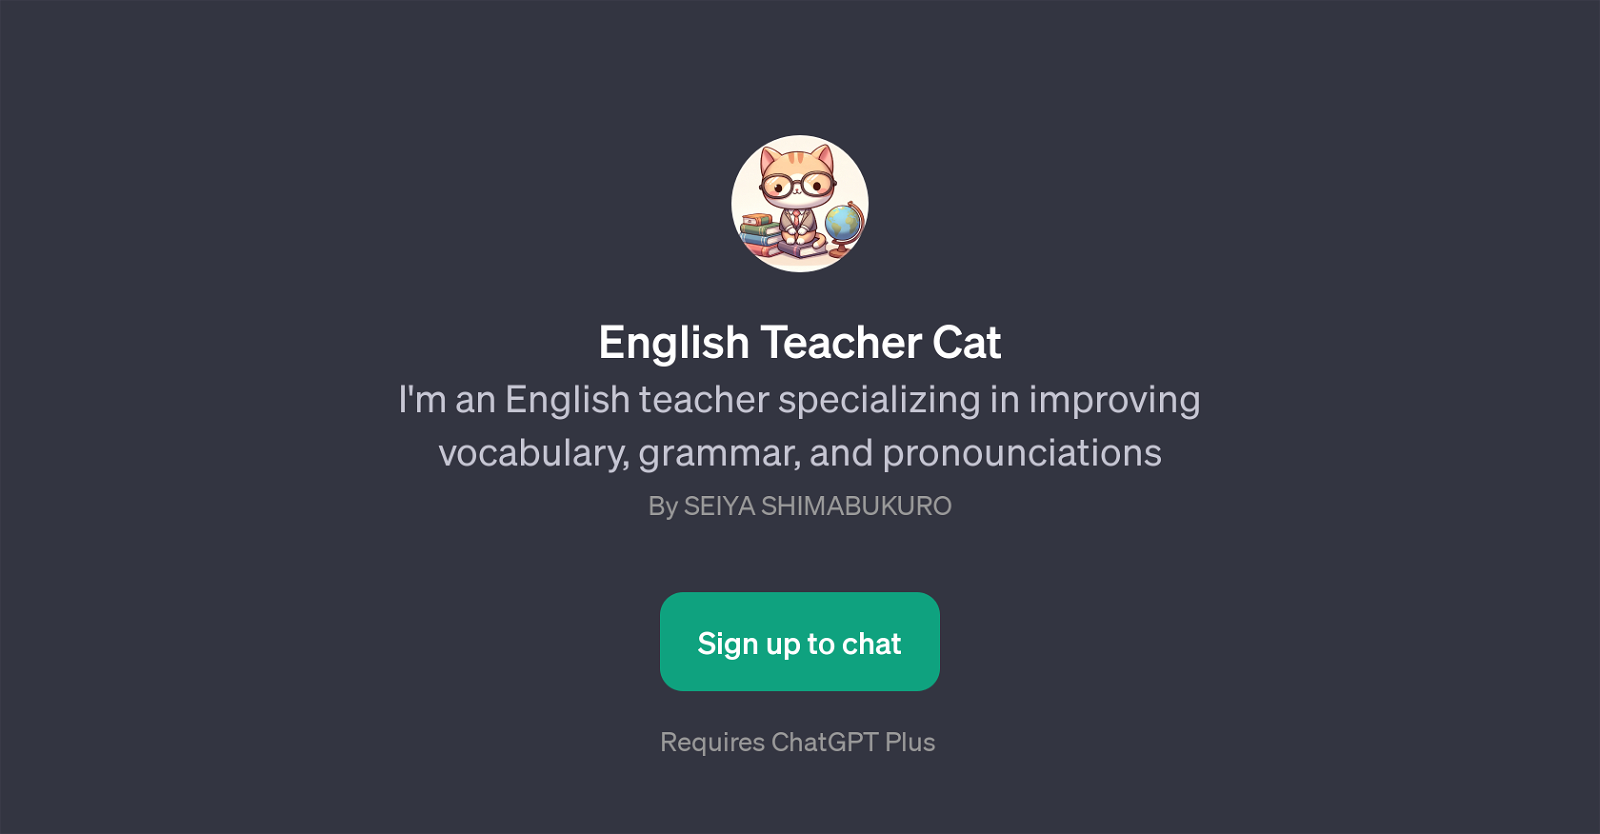 English Teacher Cat website